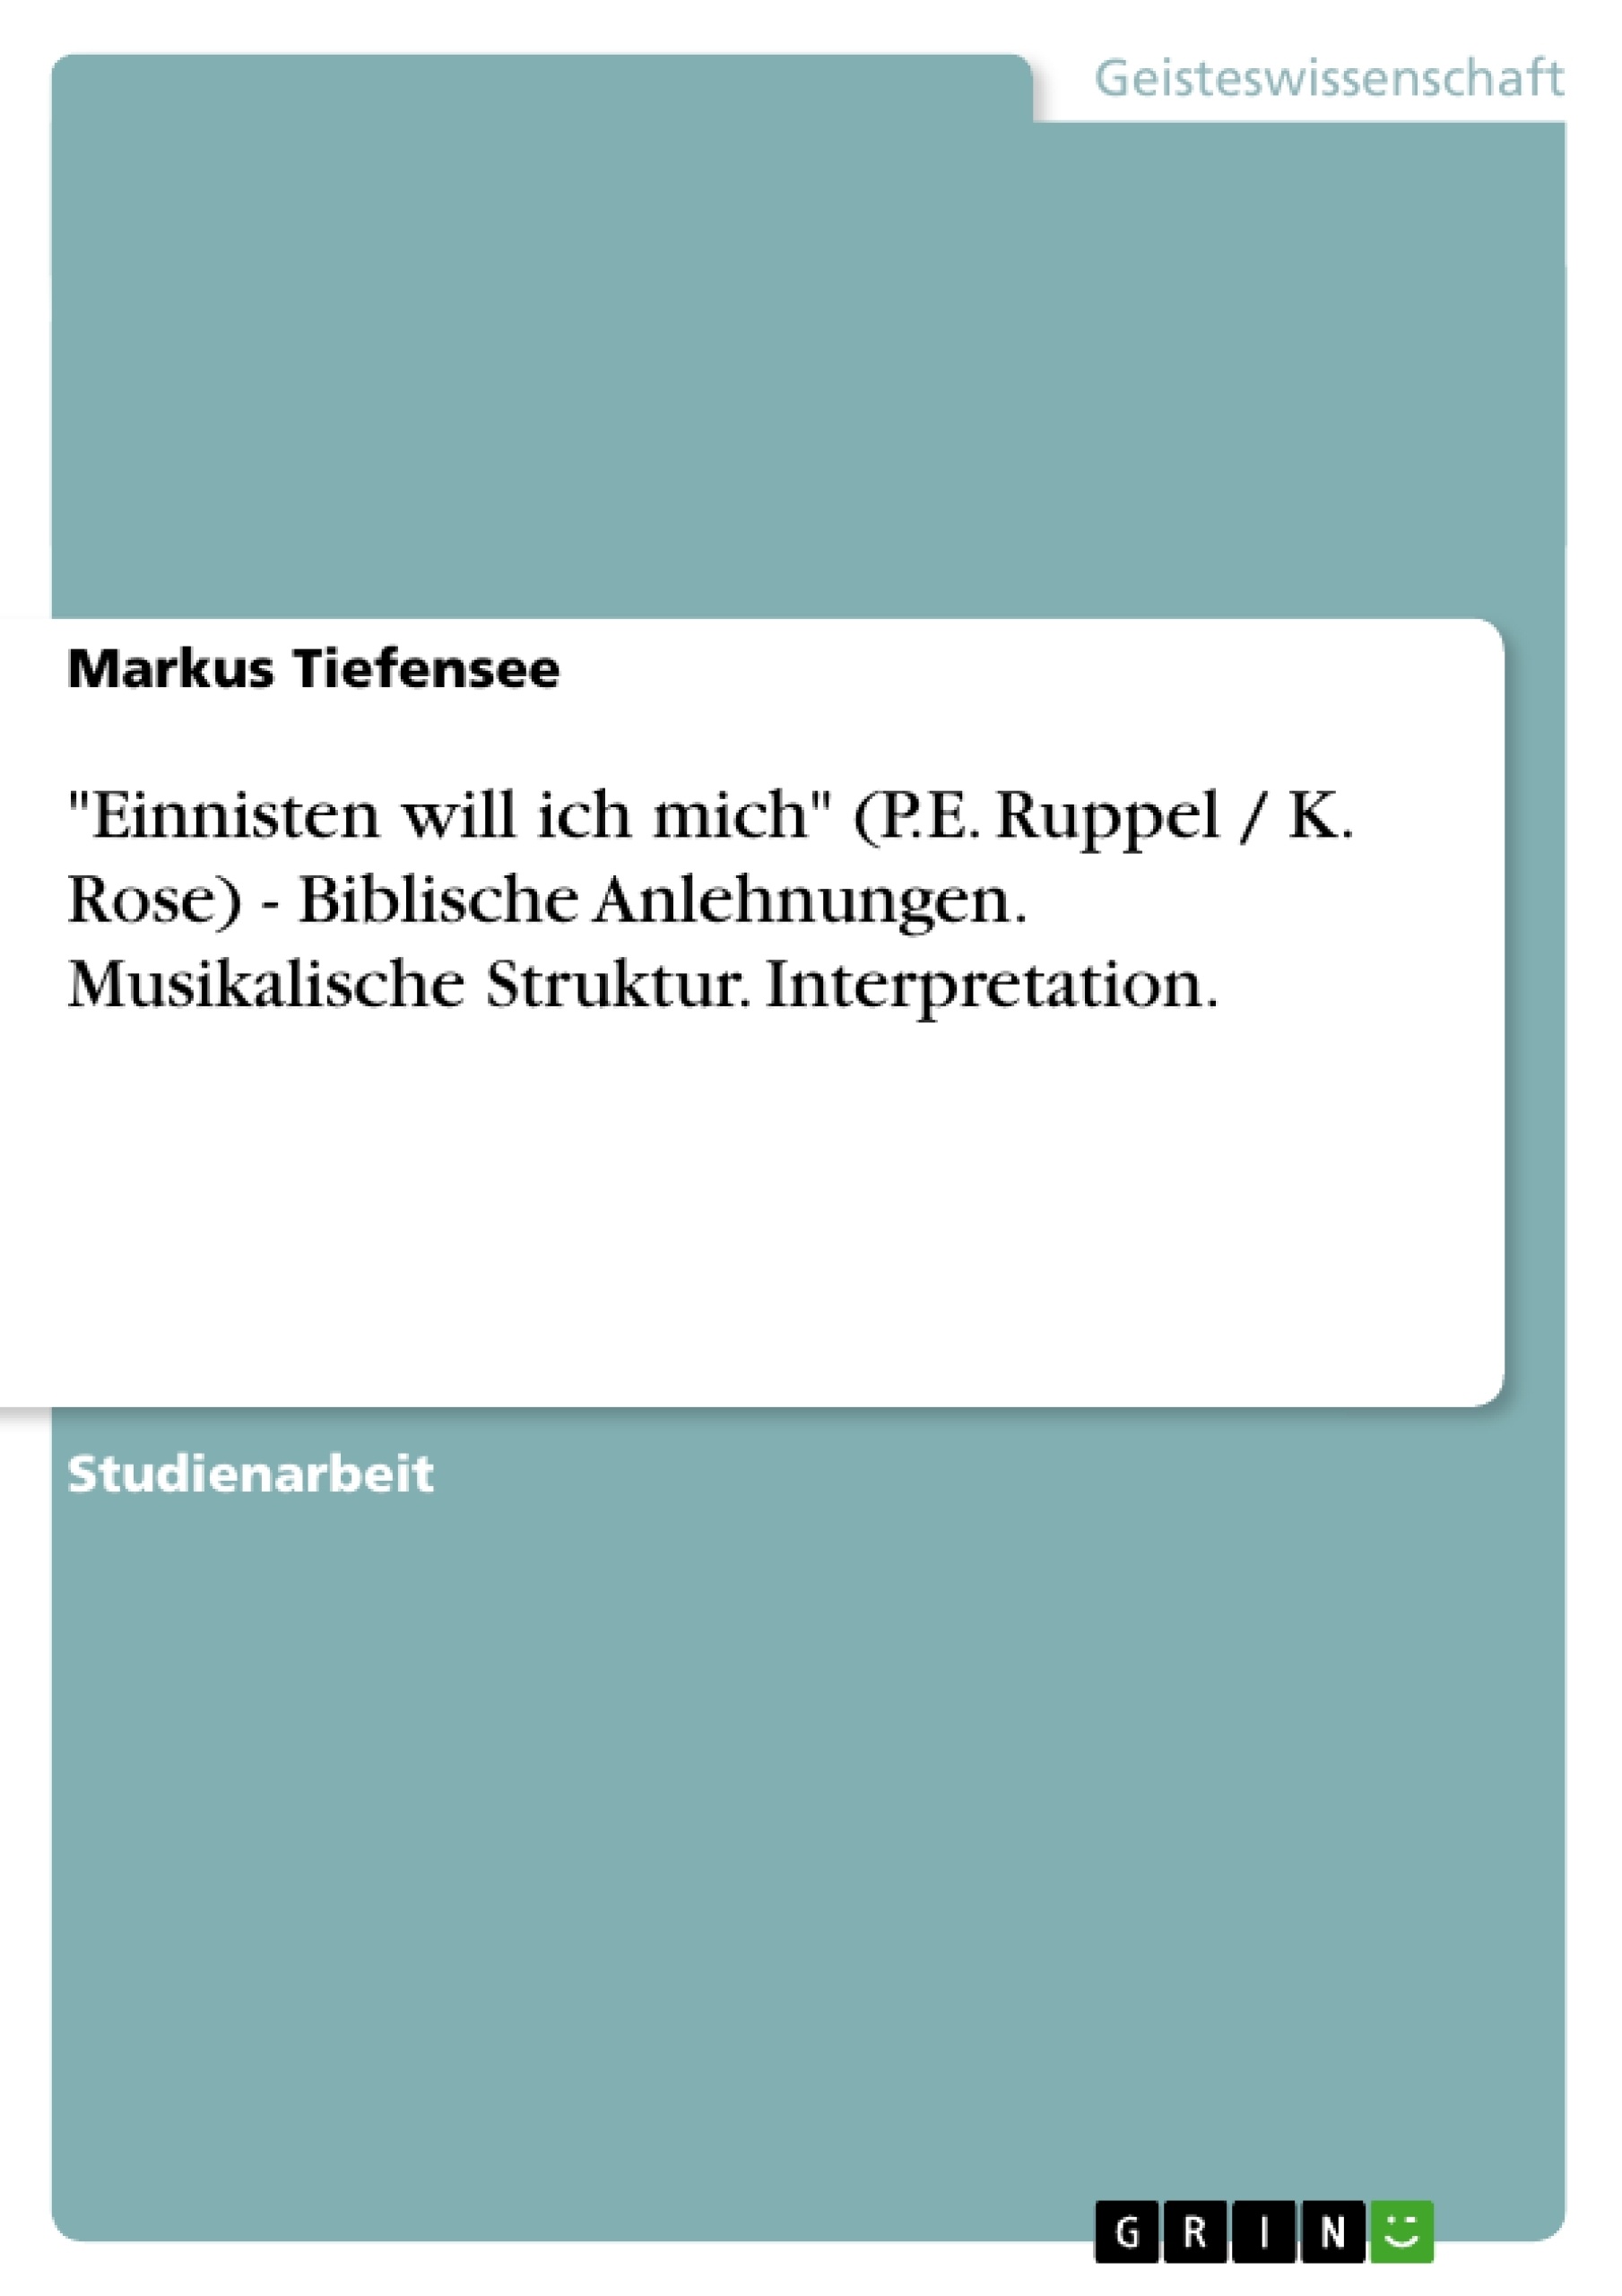 Titel: "Einnisten will ich mich" (P.E. Ruppel / K. Rose) - Biblische Anlehnungen. Musikalische Struktur. Interpretation.